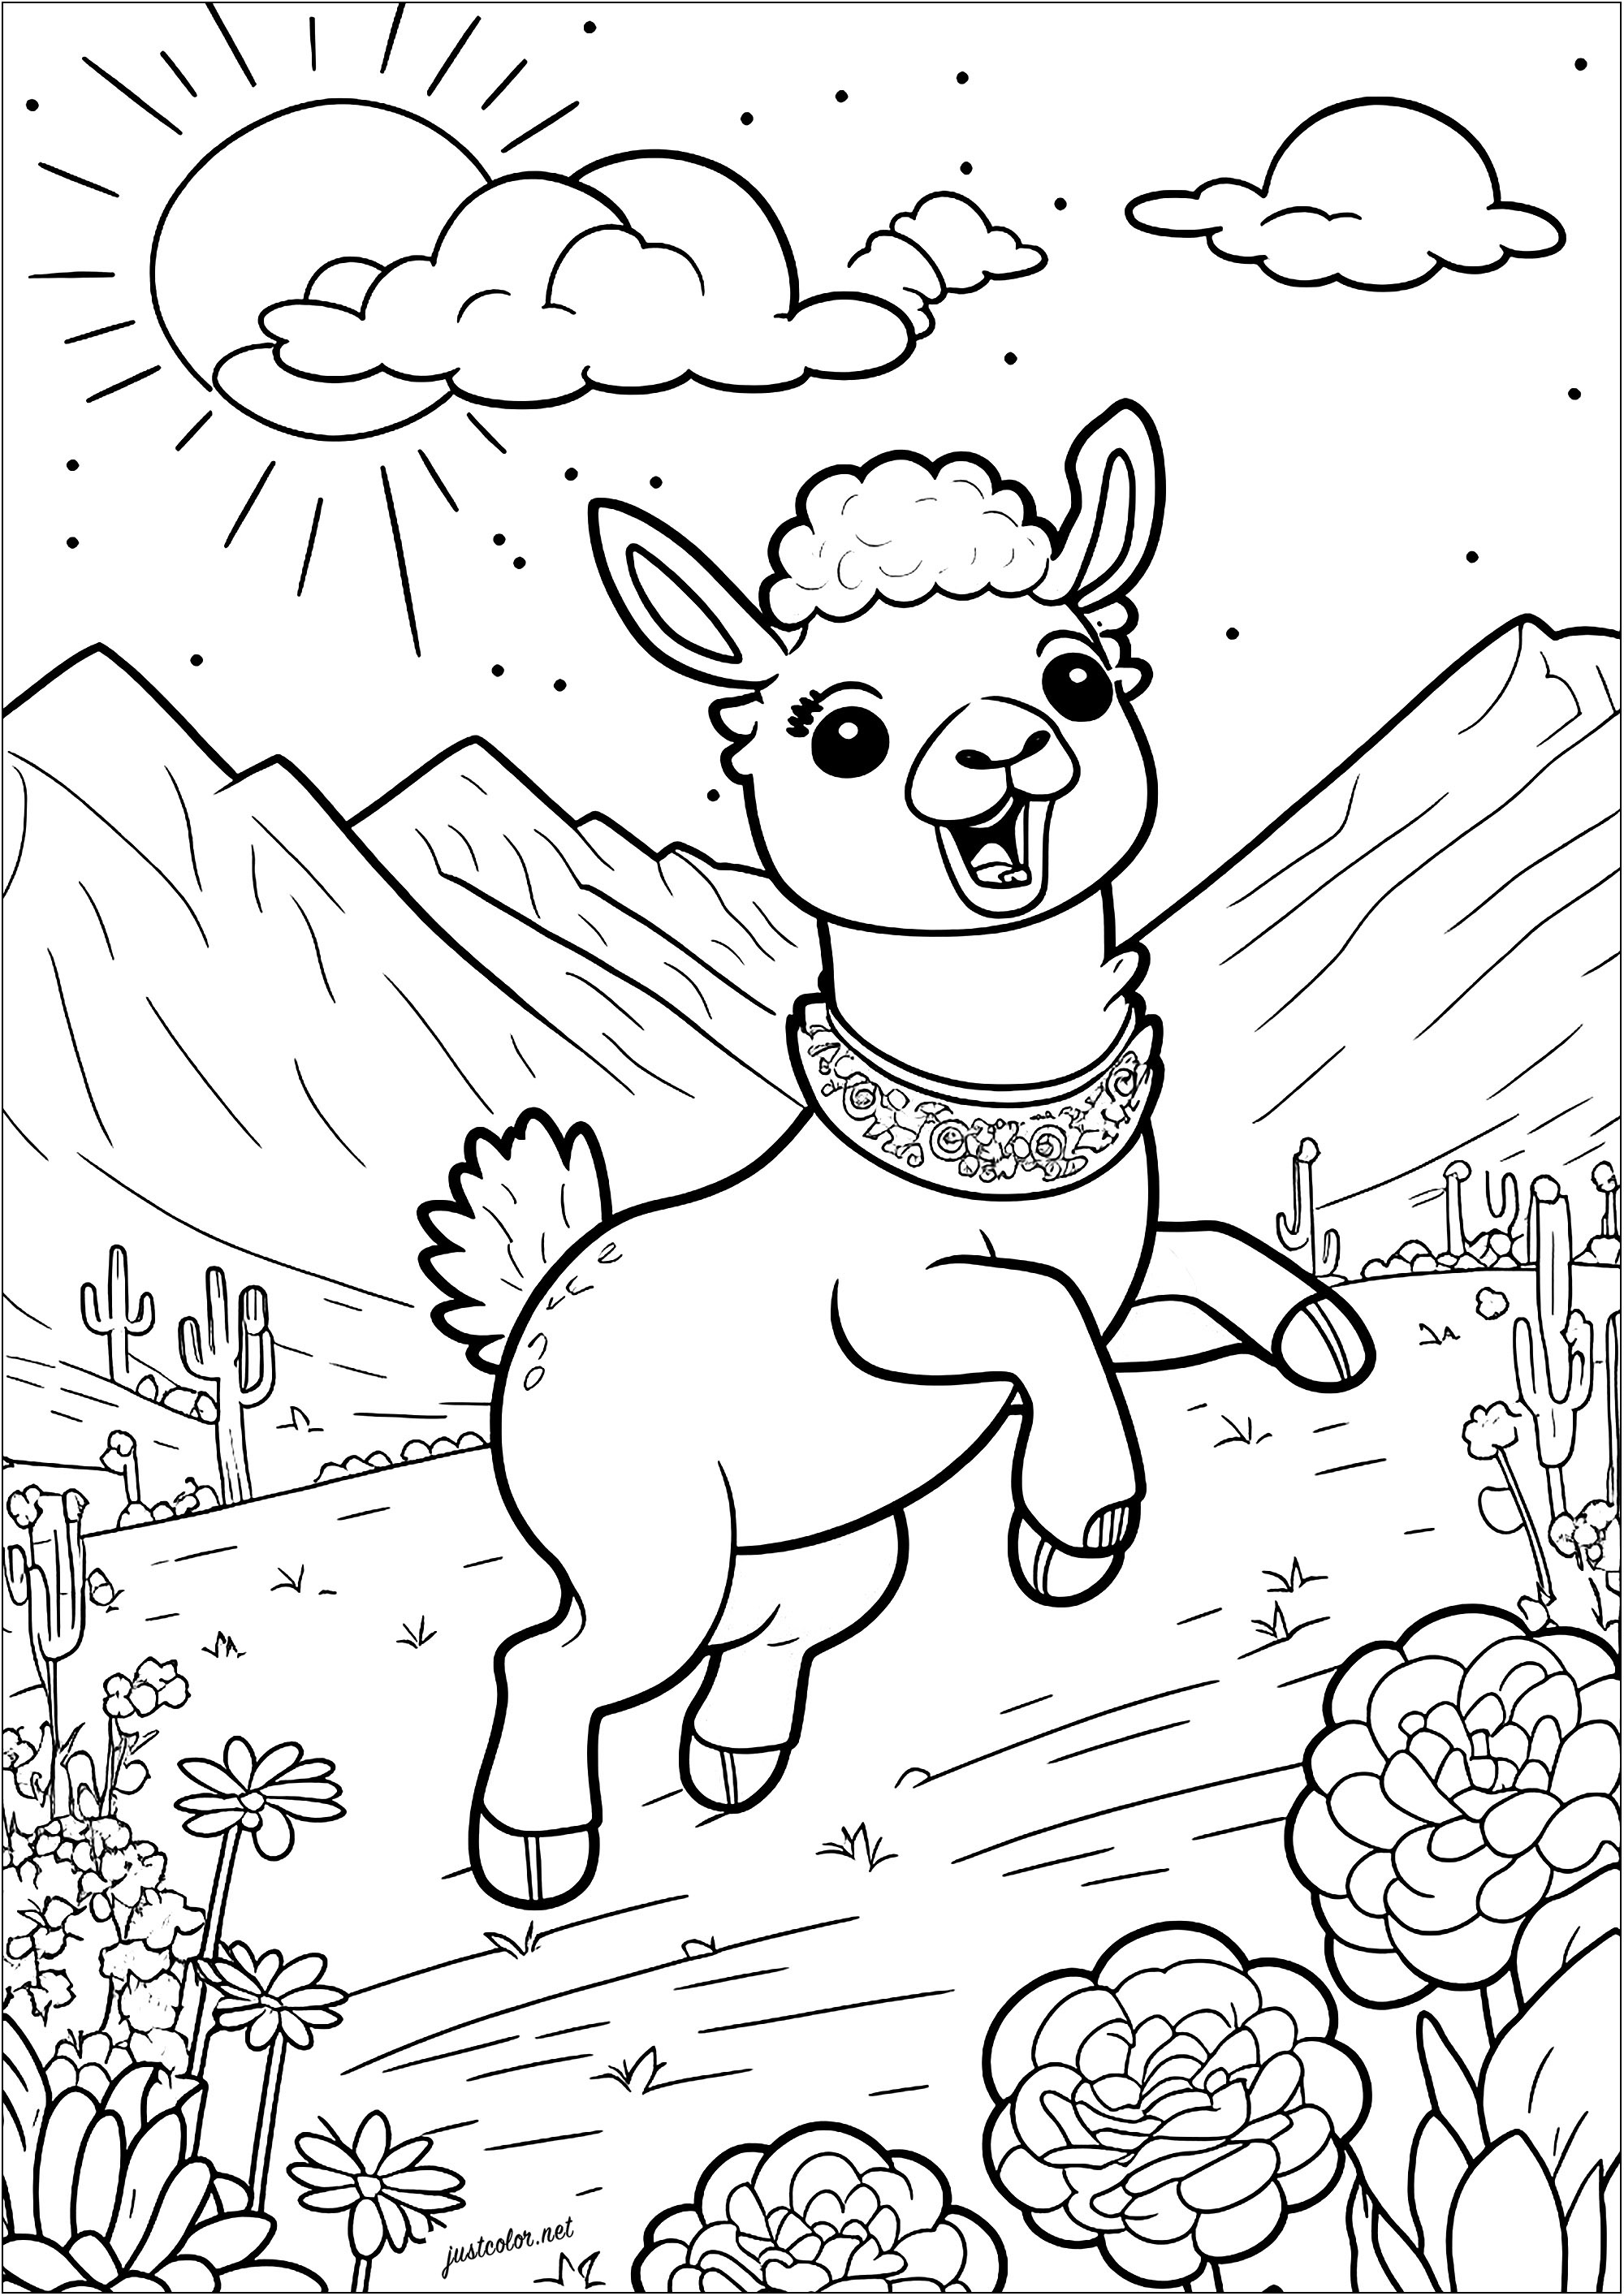 Kolorierung eines jungen Lamas, das in einer bergigen und blühenden Landschaft springt. Die langen Ohren dieses jungen Lamas ragen in den Himmel, und seine großen Augen leuchten vor Aufregung.
